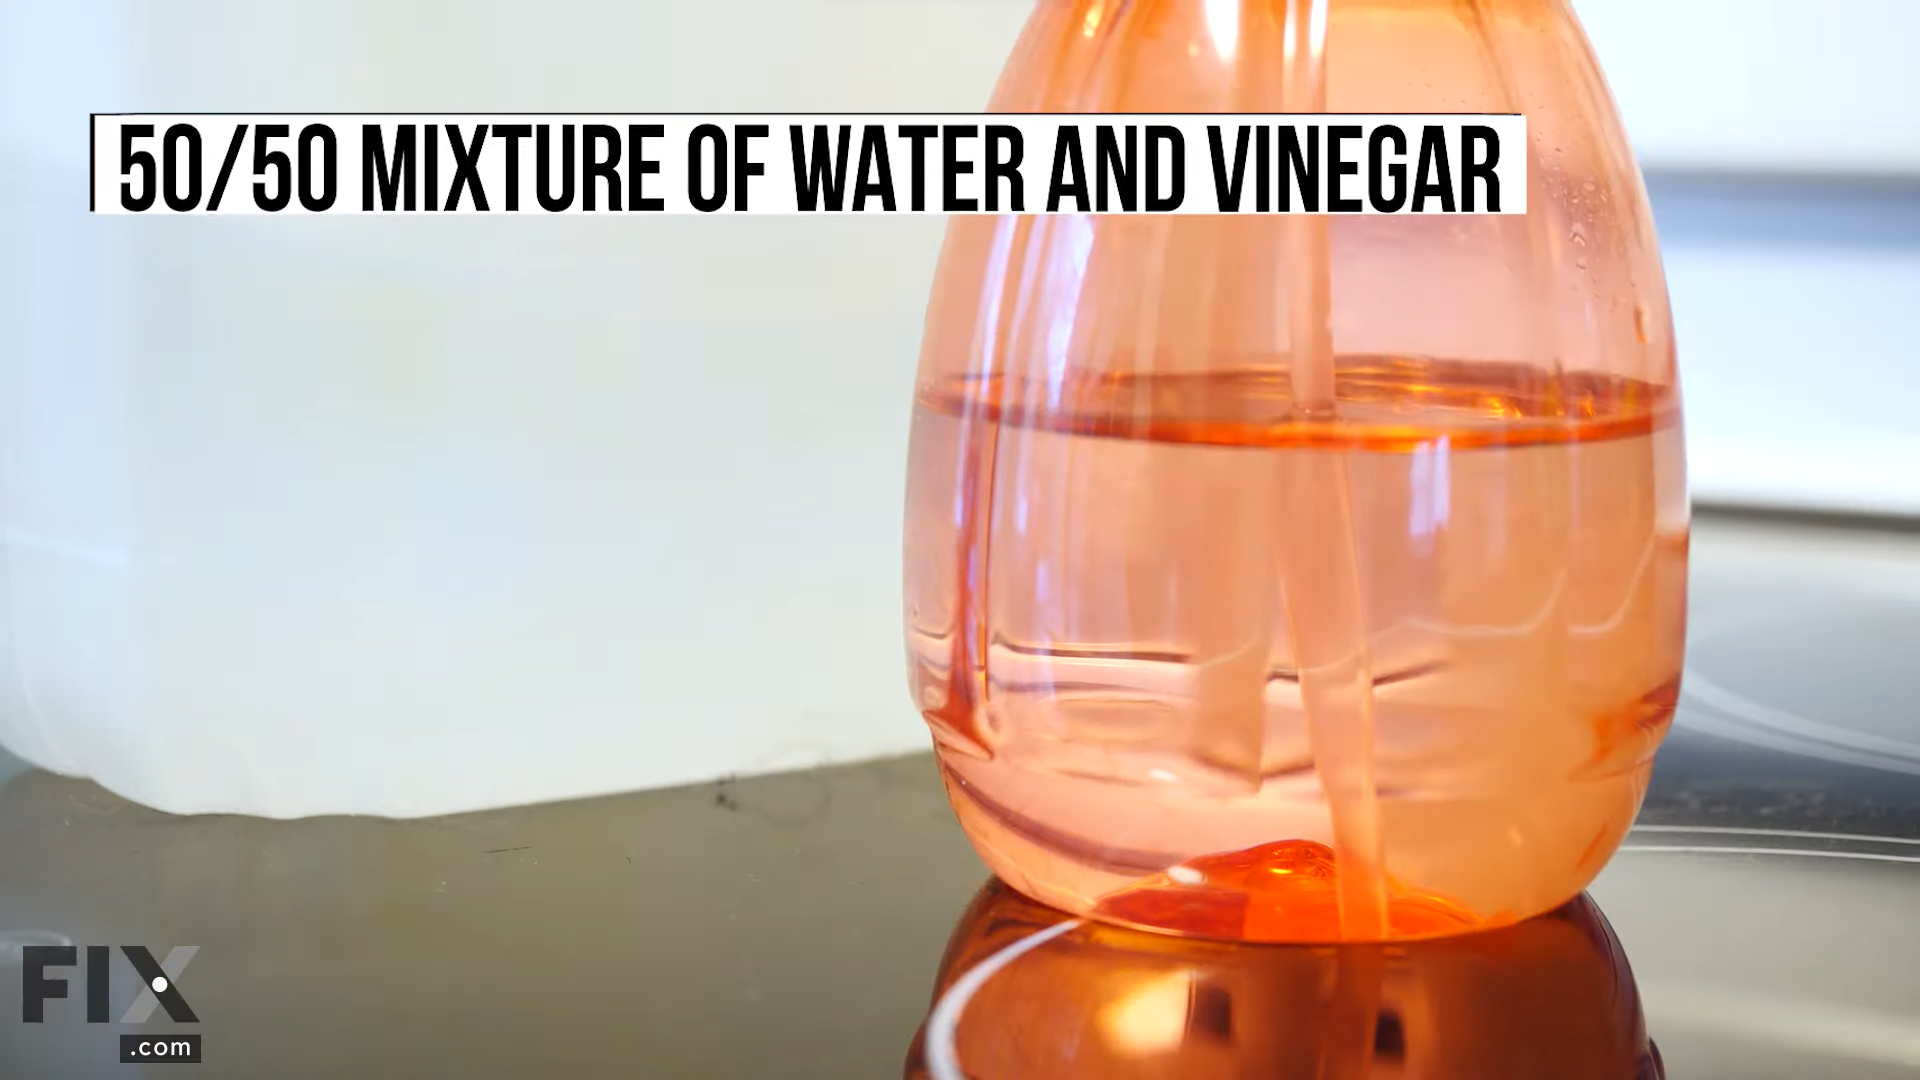 Homemade Cleaner Made from Vinegar